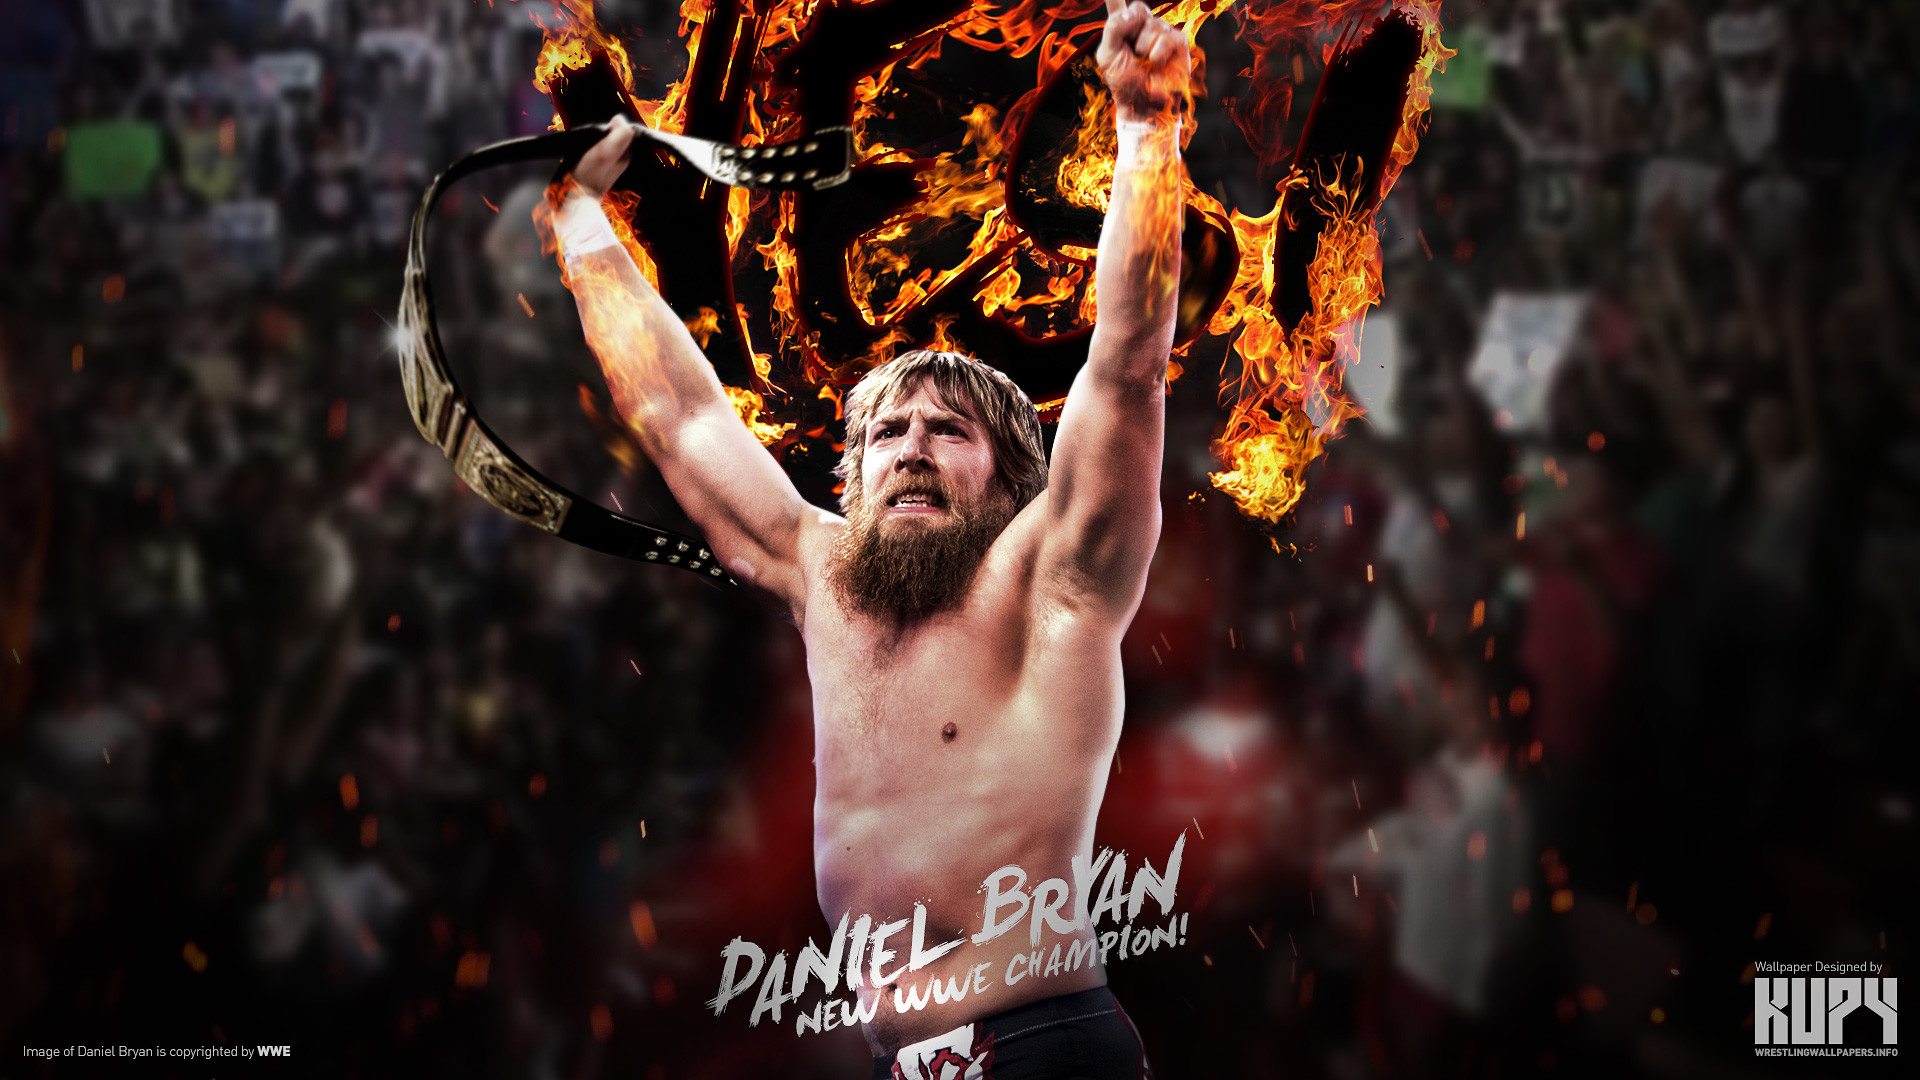 1920x1080 WWE Champion Daniel Bryan wallpaper 1920Ã1200 | 1920Ã1080 ...